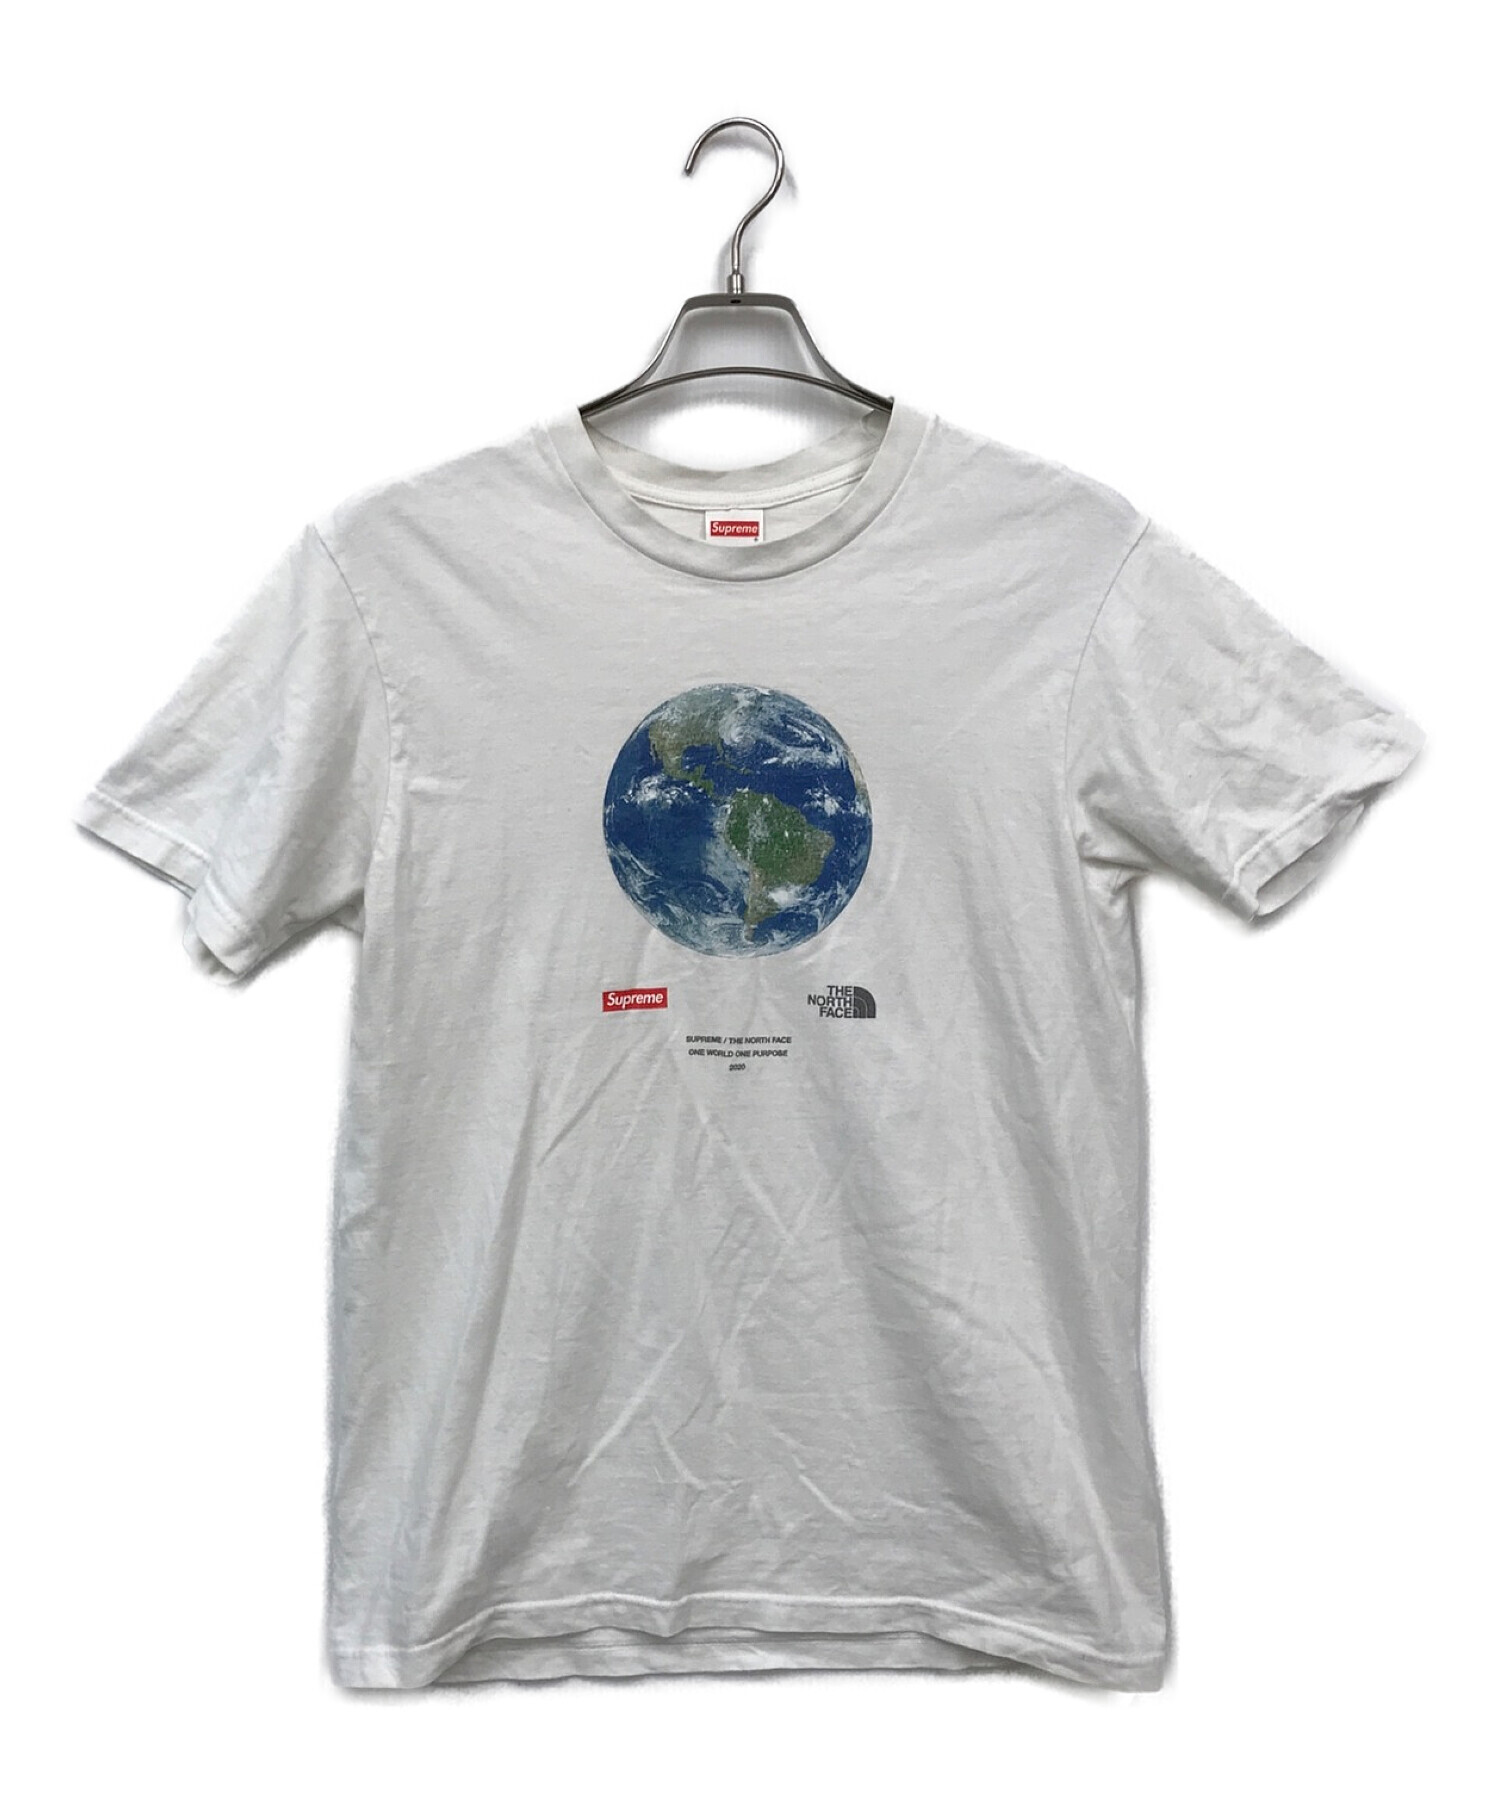 【日本謹製】Supreme/The North Face One World Tee XL Tシャツ/カットソー(半袖/袖なし)